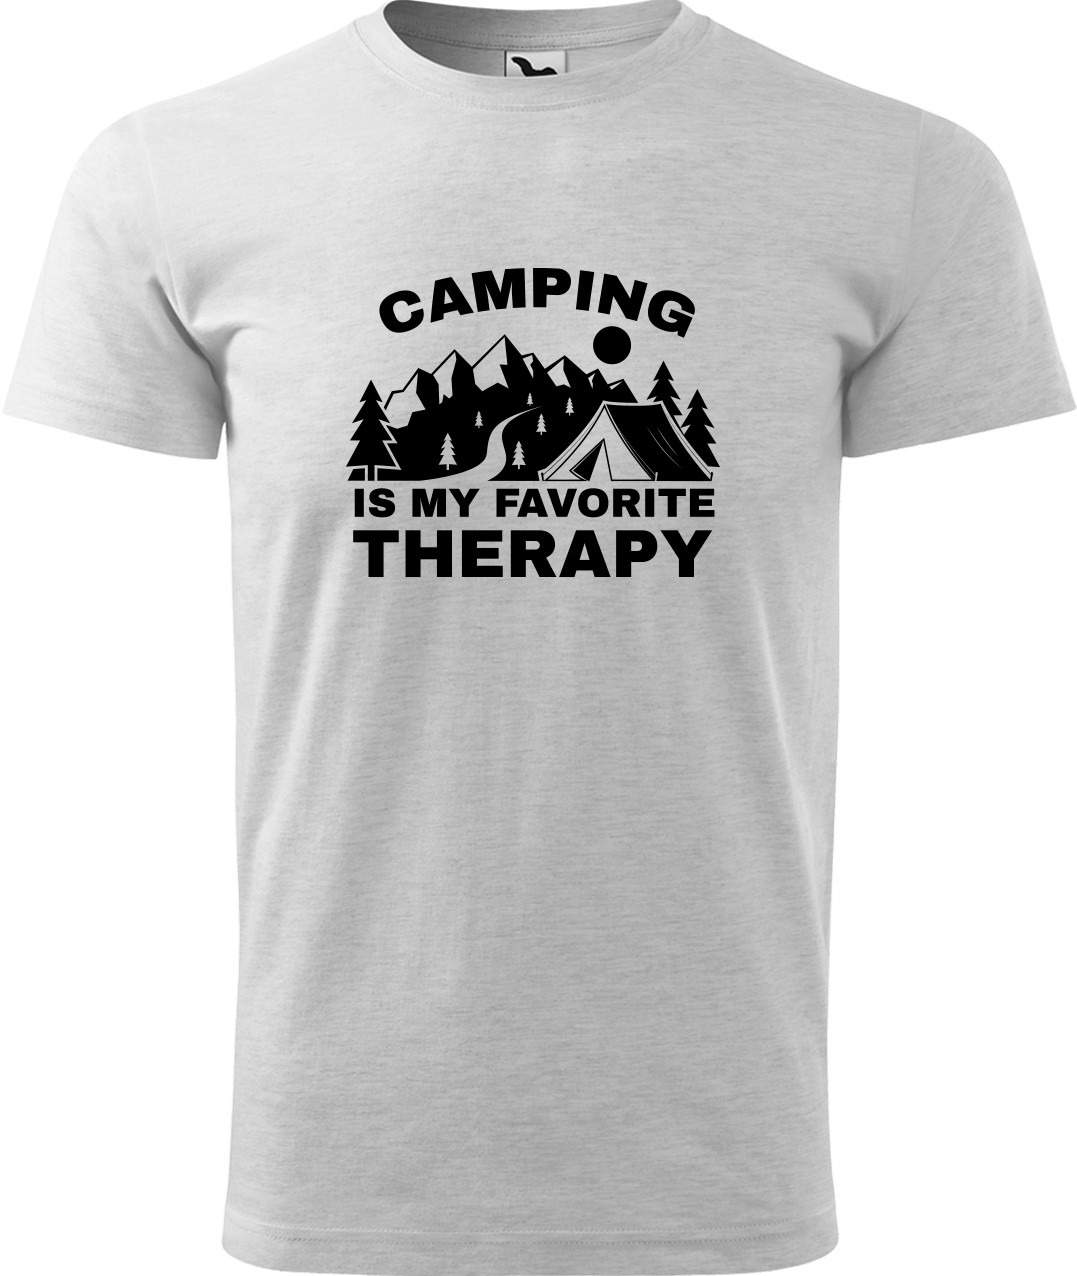 Pánské cestovatelské tričko - Camping is my favorite therapy Velikost: L, Barva: Světle šedý melír (03), Střih: pánský